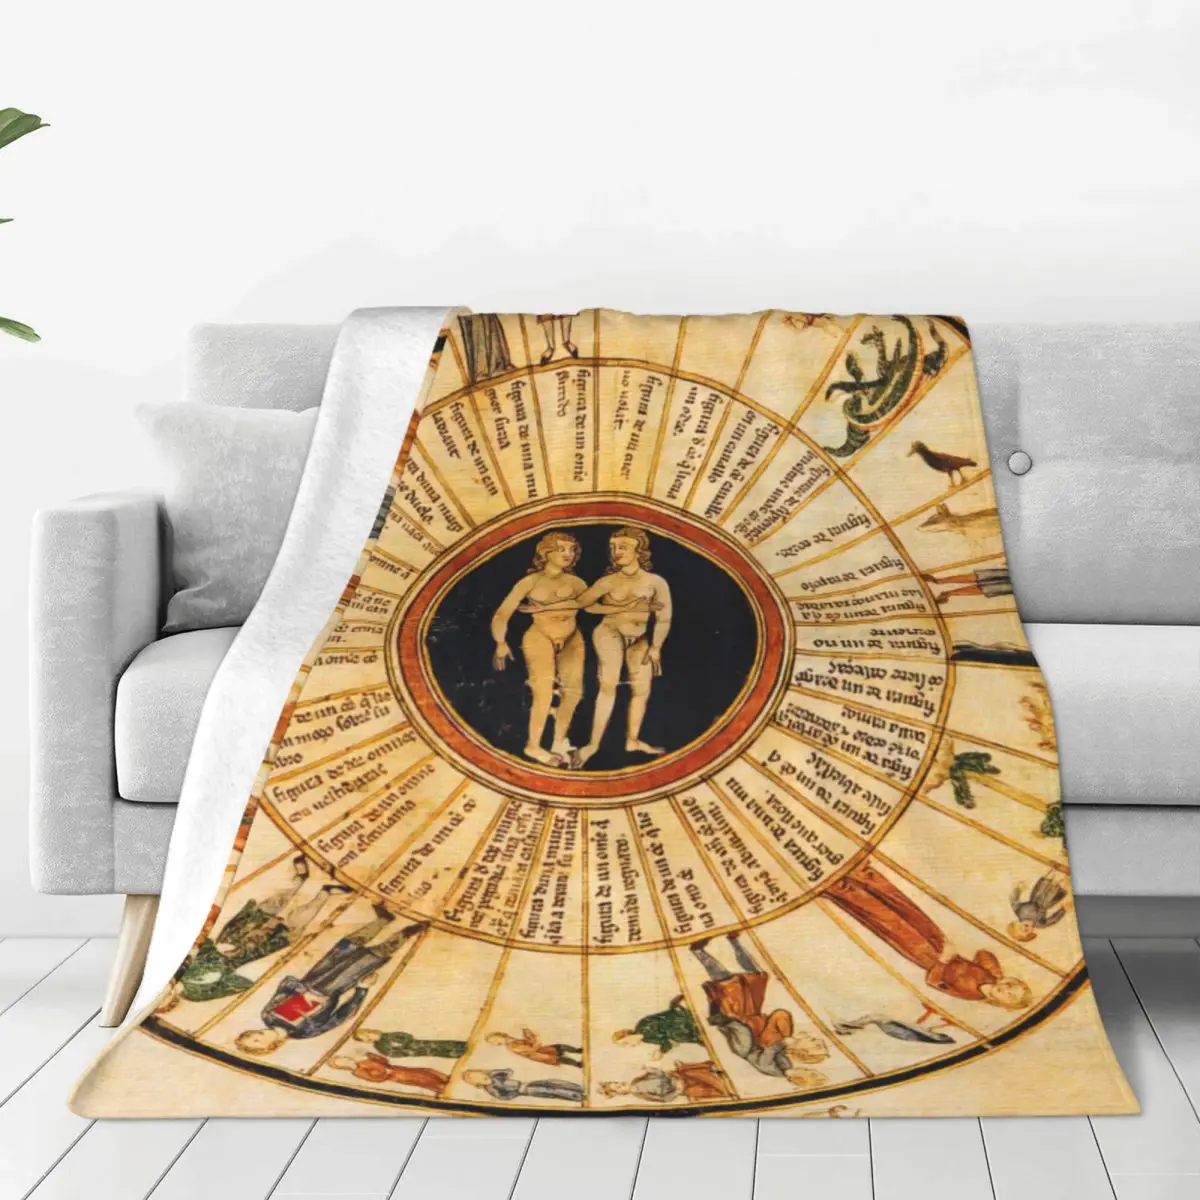 

Vintage Astrological Chart Bed Blanket Flannel Blanket Flannel Blanket Air conditioning blanket